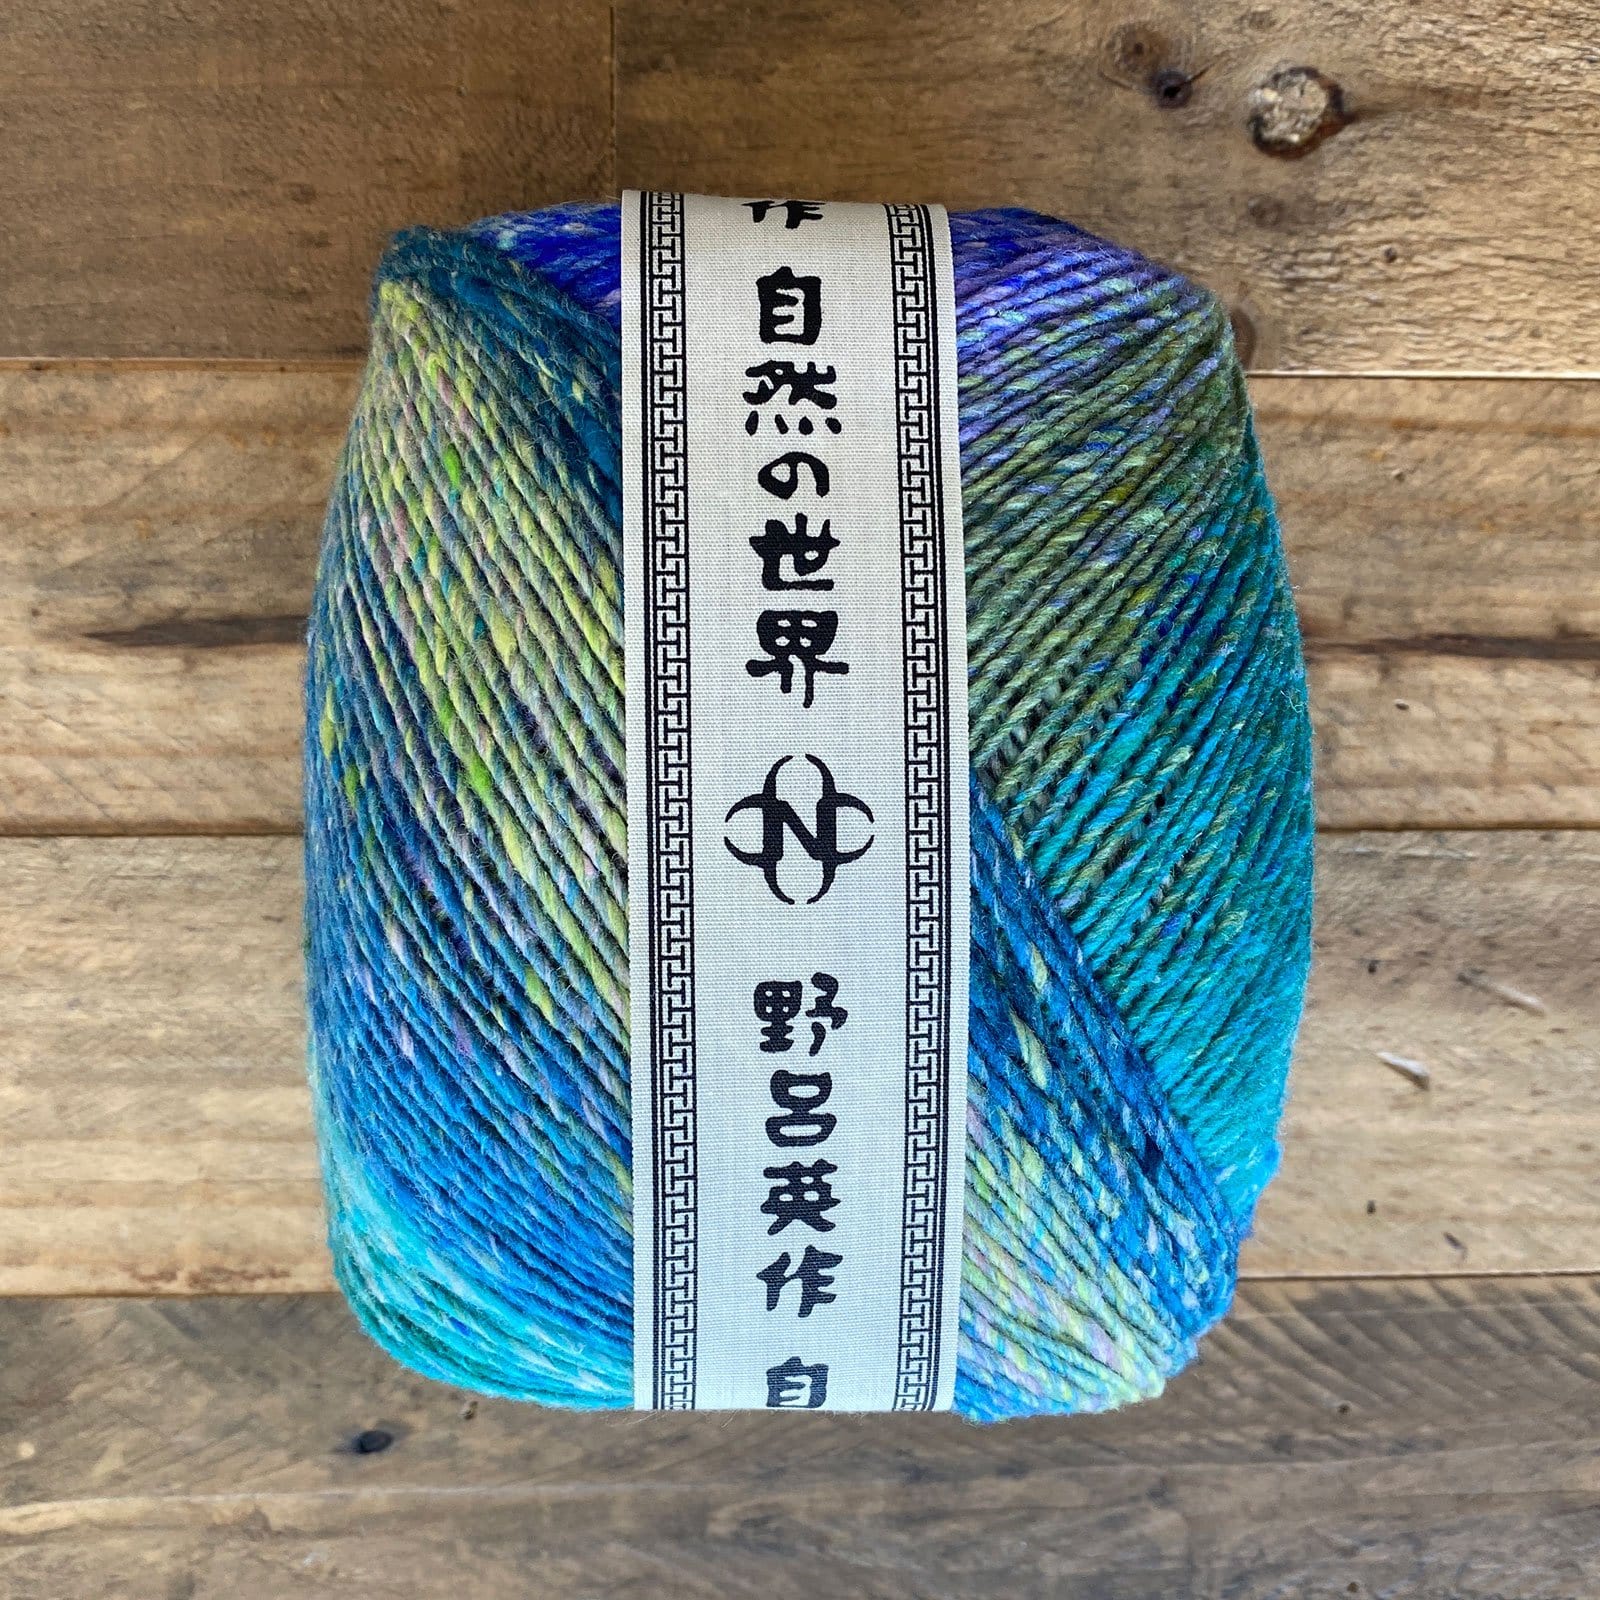 Noro Ito - The Dizzy Knitter